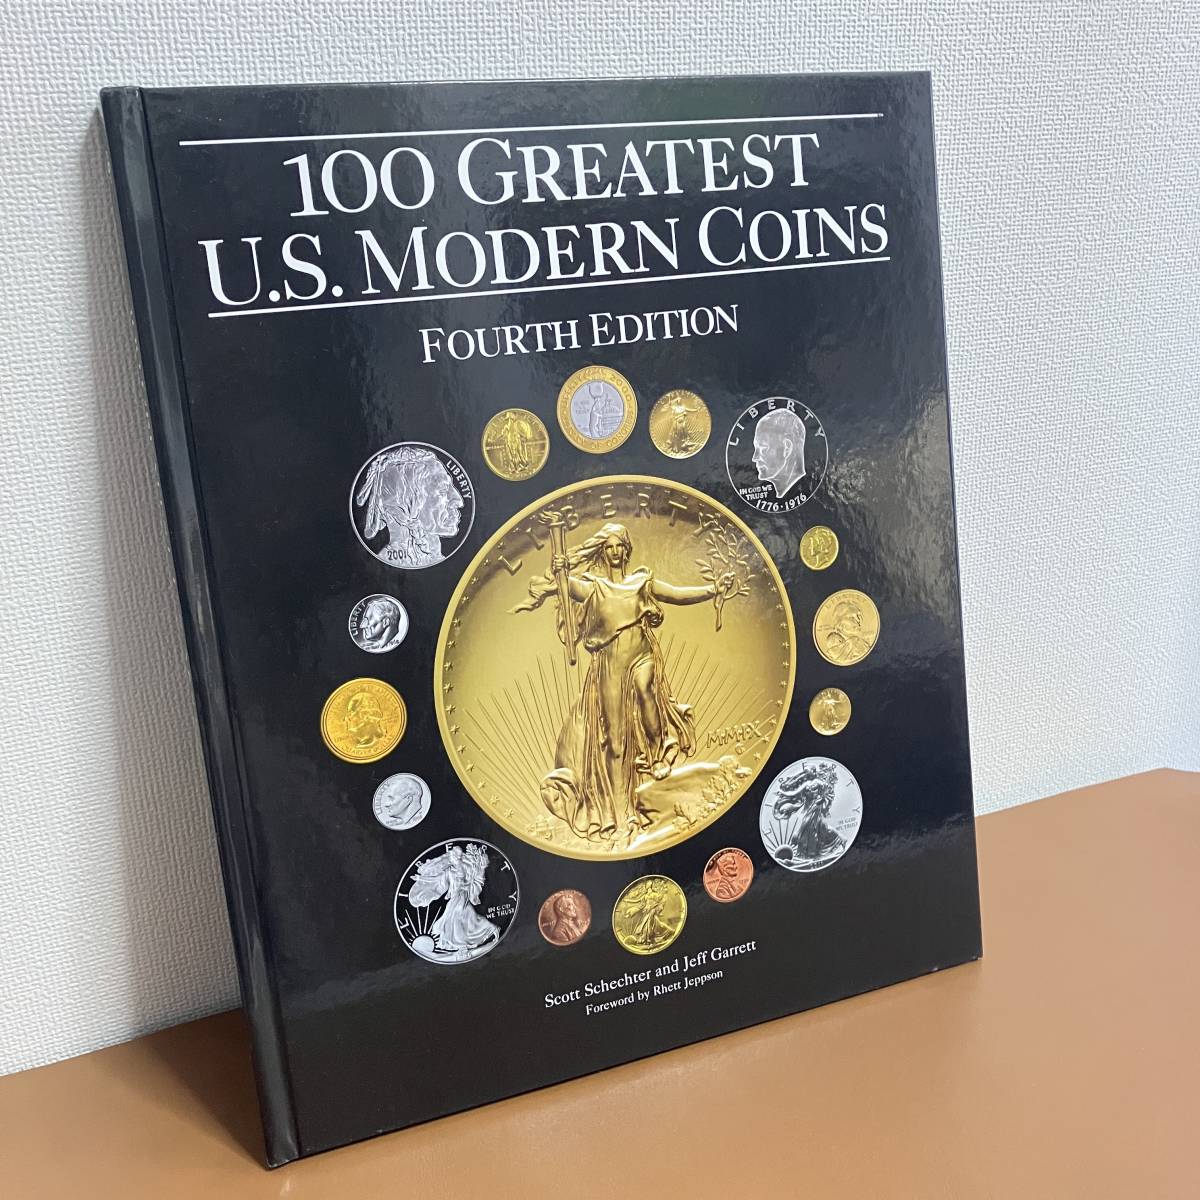  монета соответствующие книги 100 серый тест *US* современный * монета z/ 100 GREATEST U.S. MODERN COINS